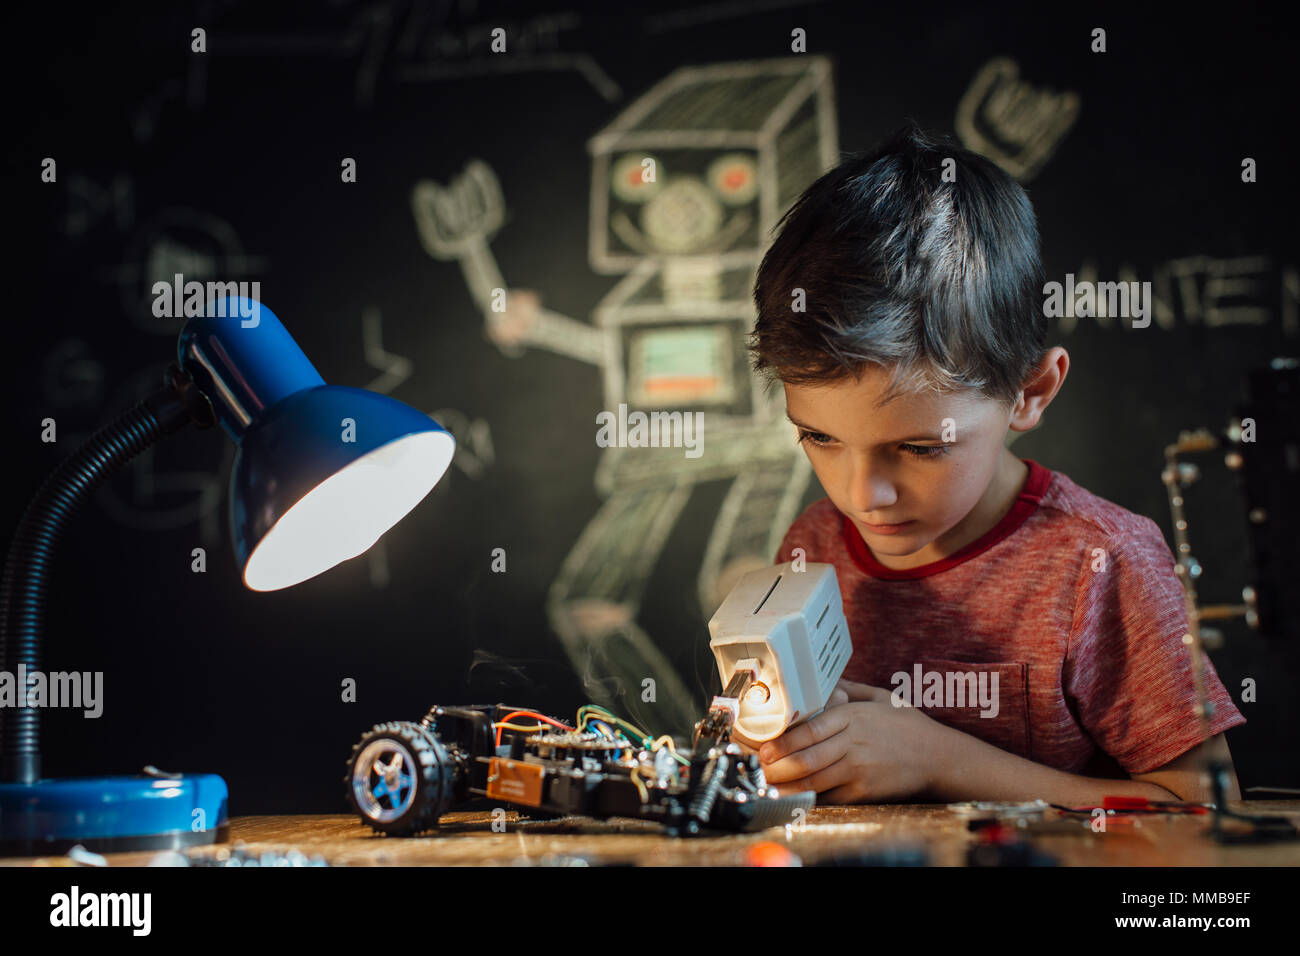 Junge Arbeiten auf seinem elektronischen Projekt mit einem Lötkolben. Porträt eines Schülers sein Hobby genießen und einen Roboter Spielzeug Auto. Stockfoto